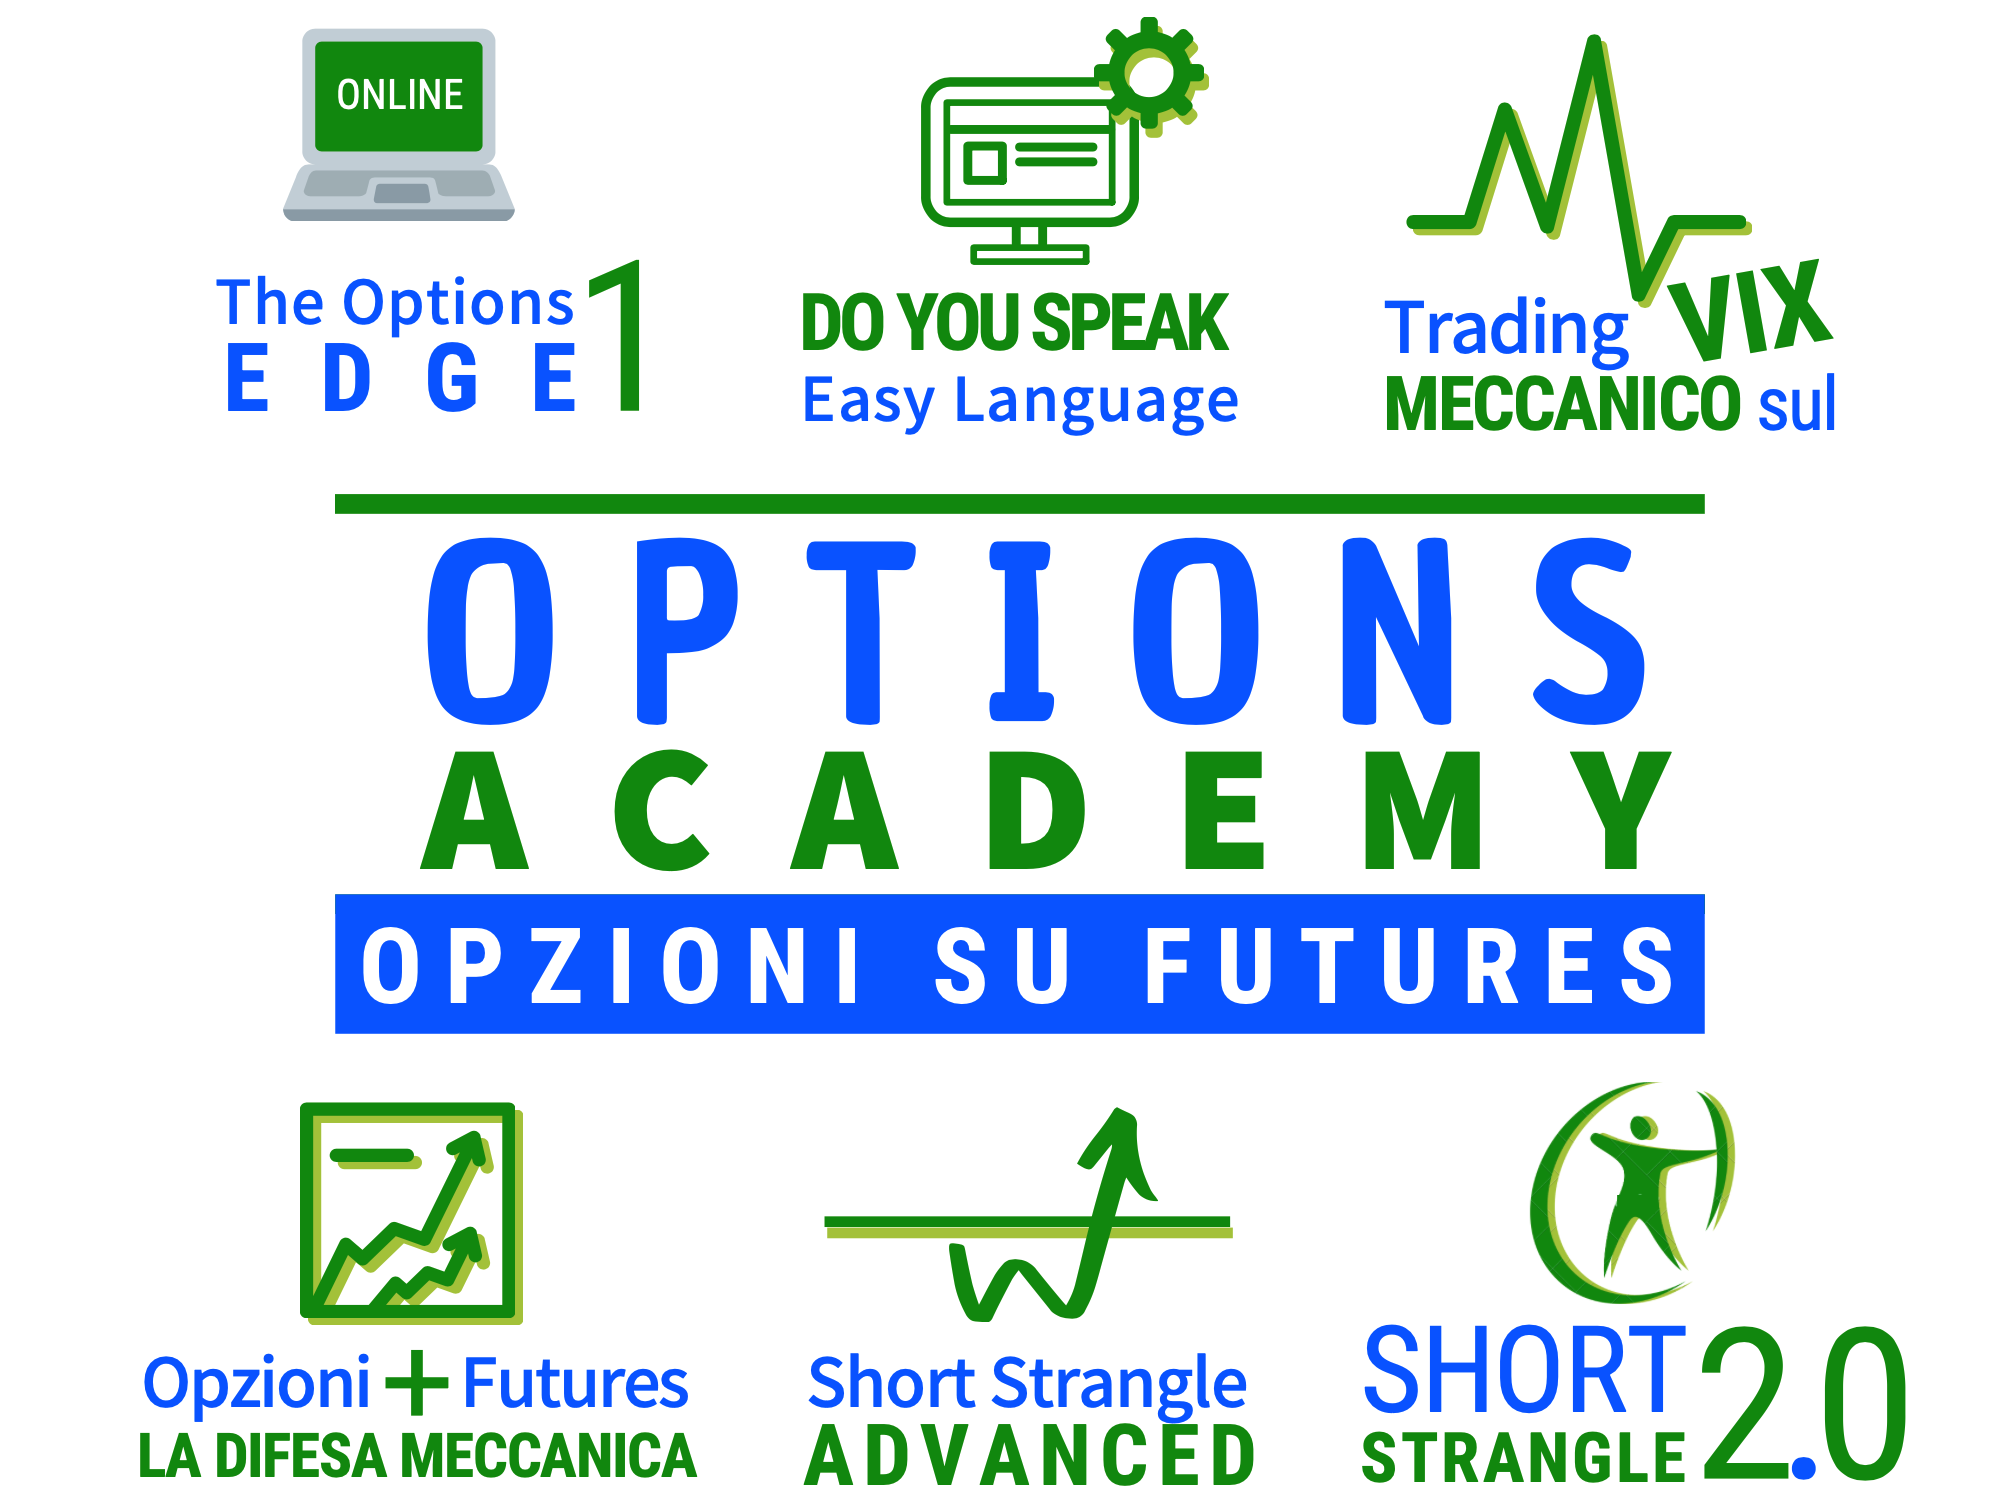 qtlab corsi short strangle advanced, corso trading opzioni, corso opzioni, trading in opzioni, opzioni trading, corsi opzioni, trading con le opzioni